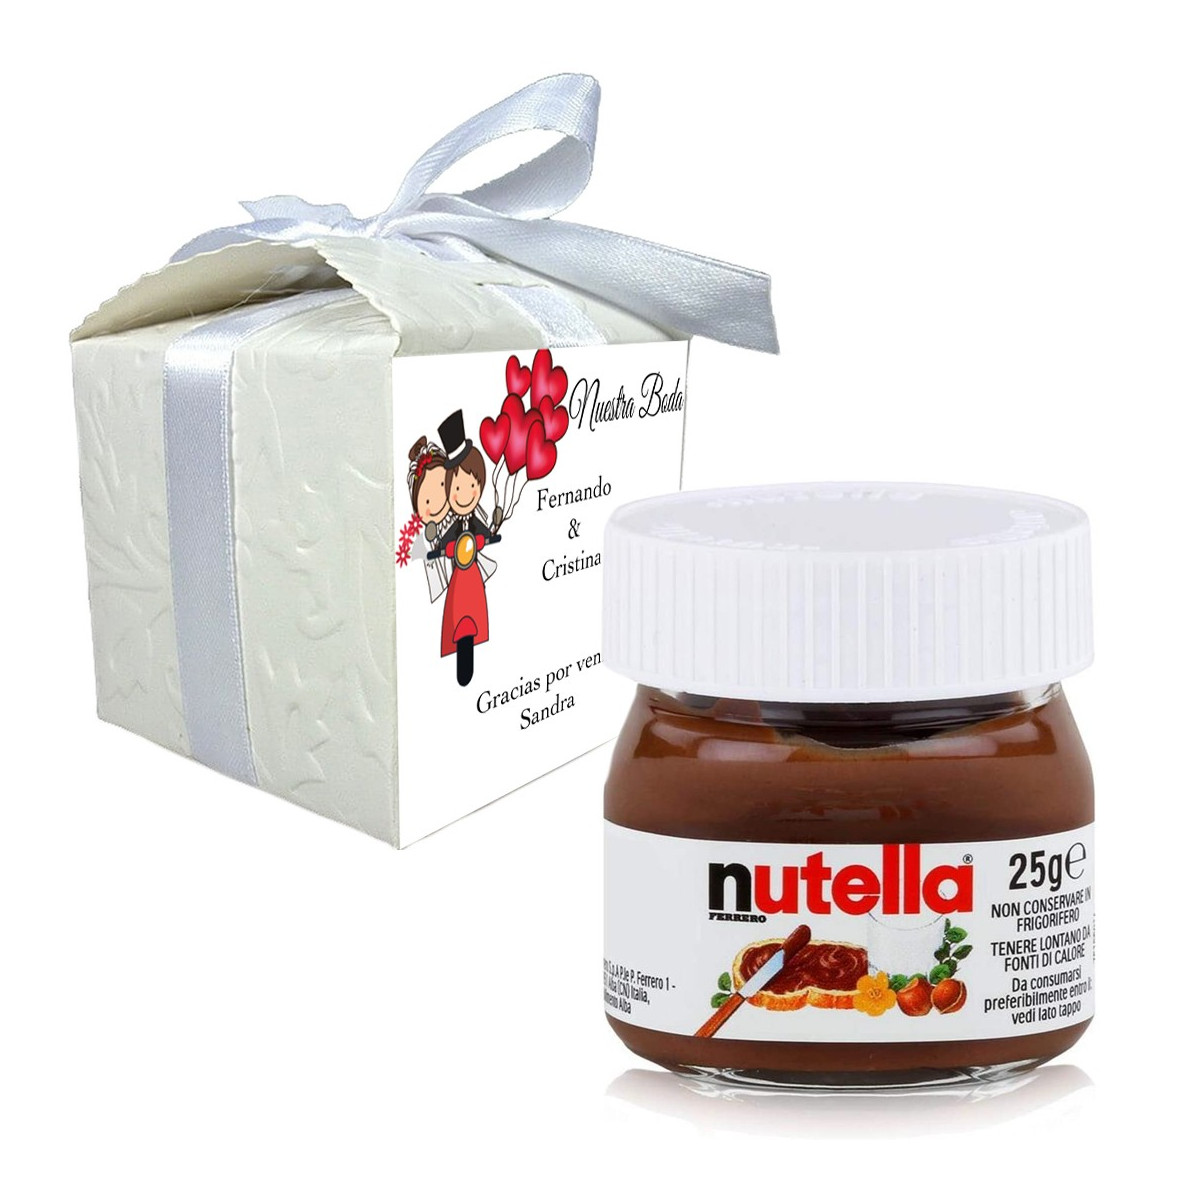 Nutella dans une boîte cadeau personnalisée avec le nom de l invité et une phrase de remerciement